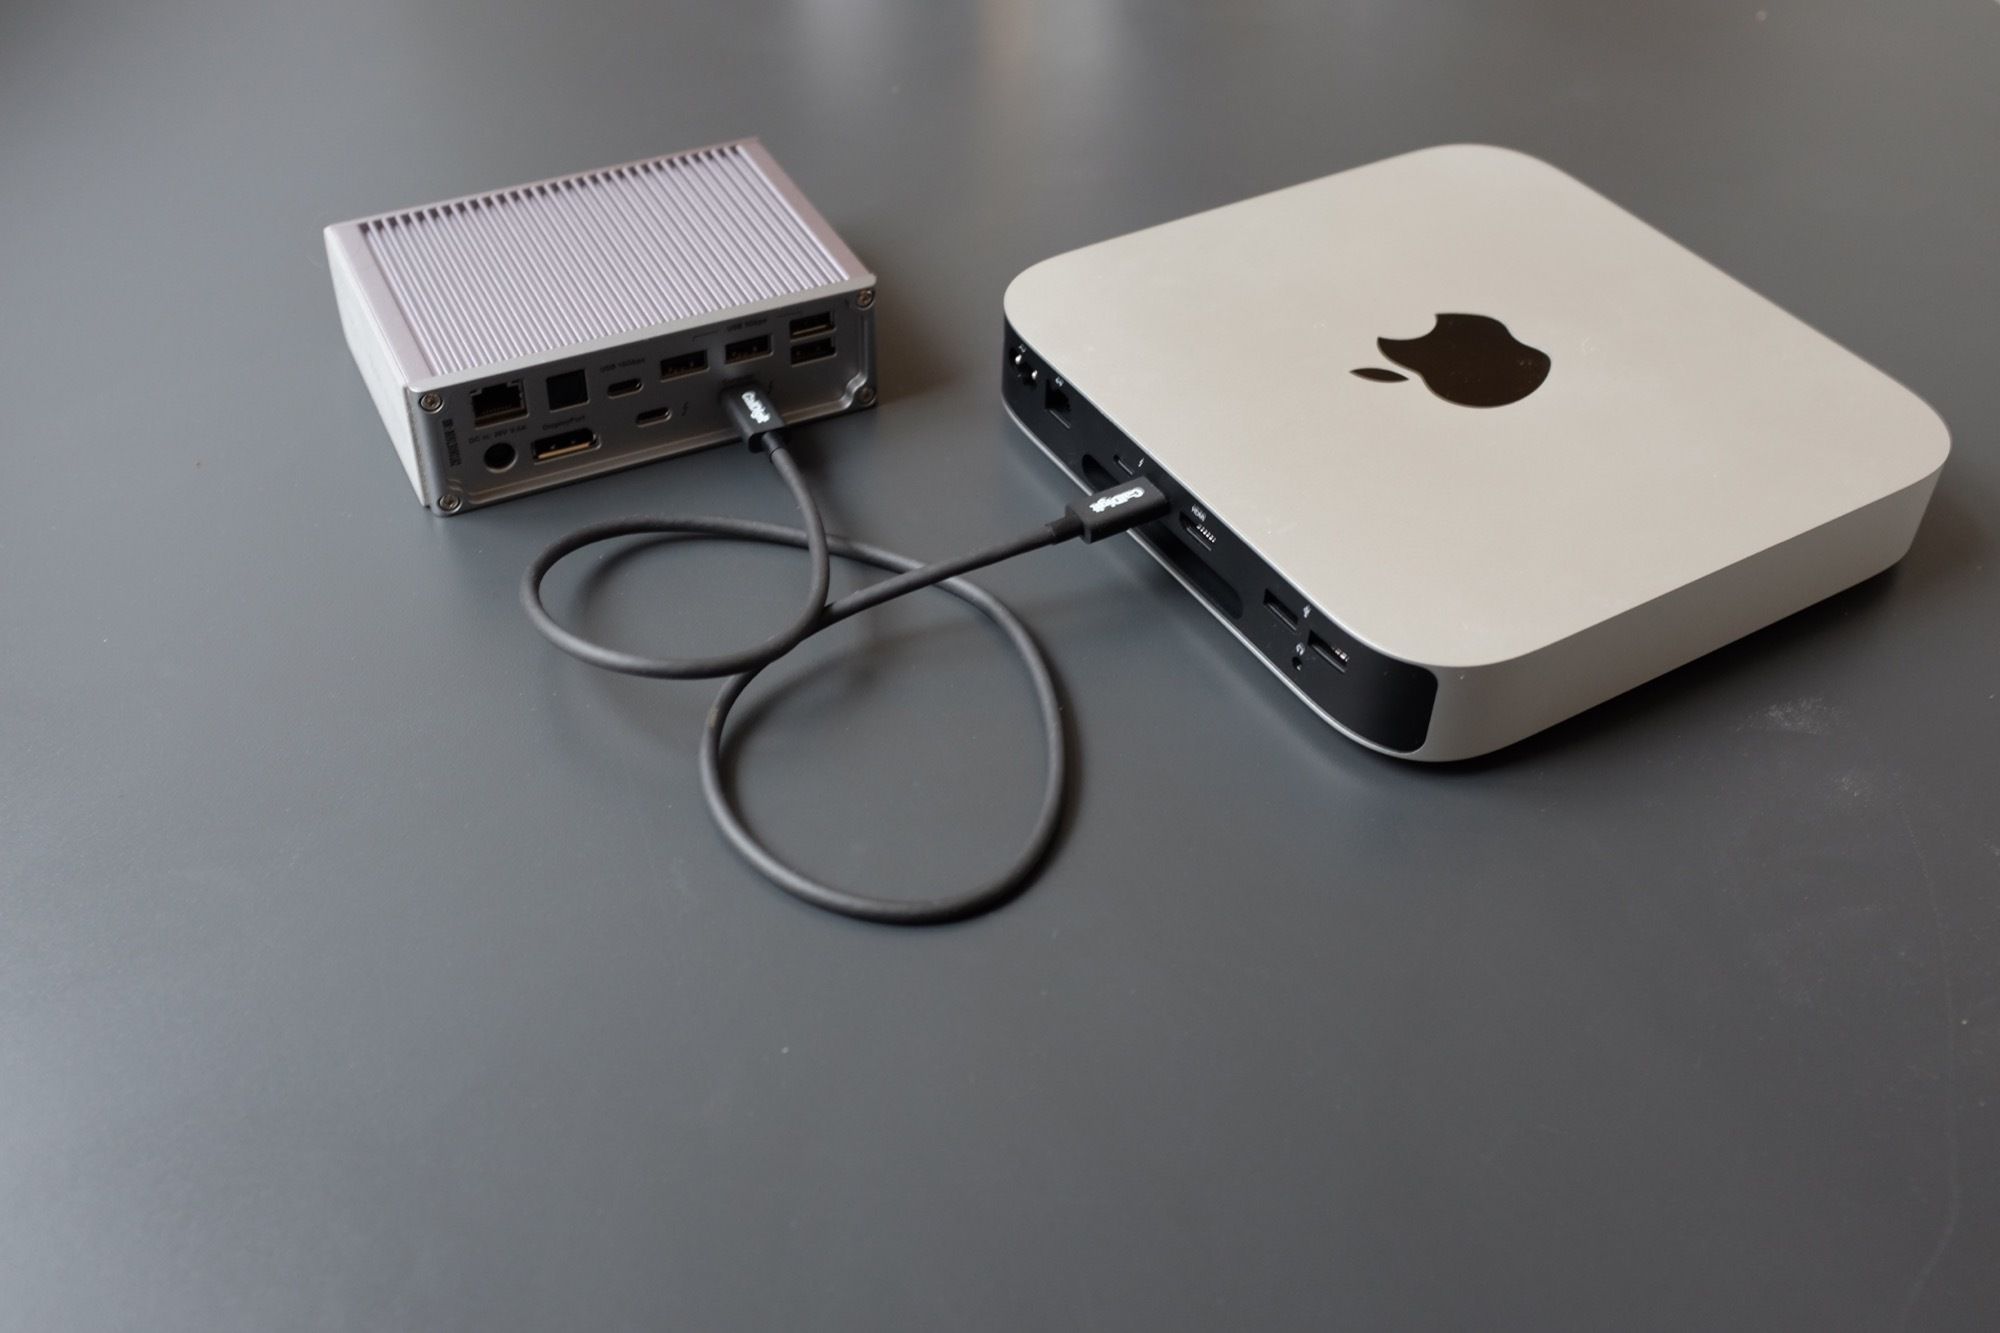 Док-станція CalDigit TS3 + підключена до Mac Mini